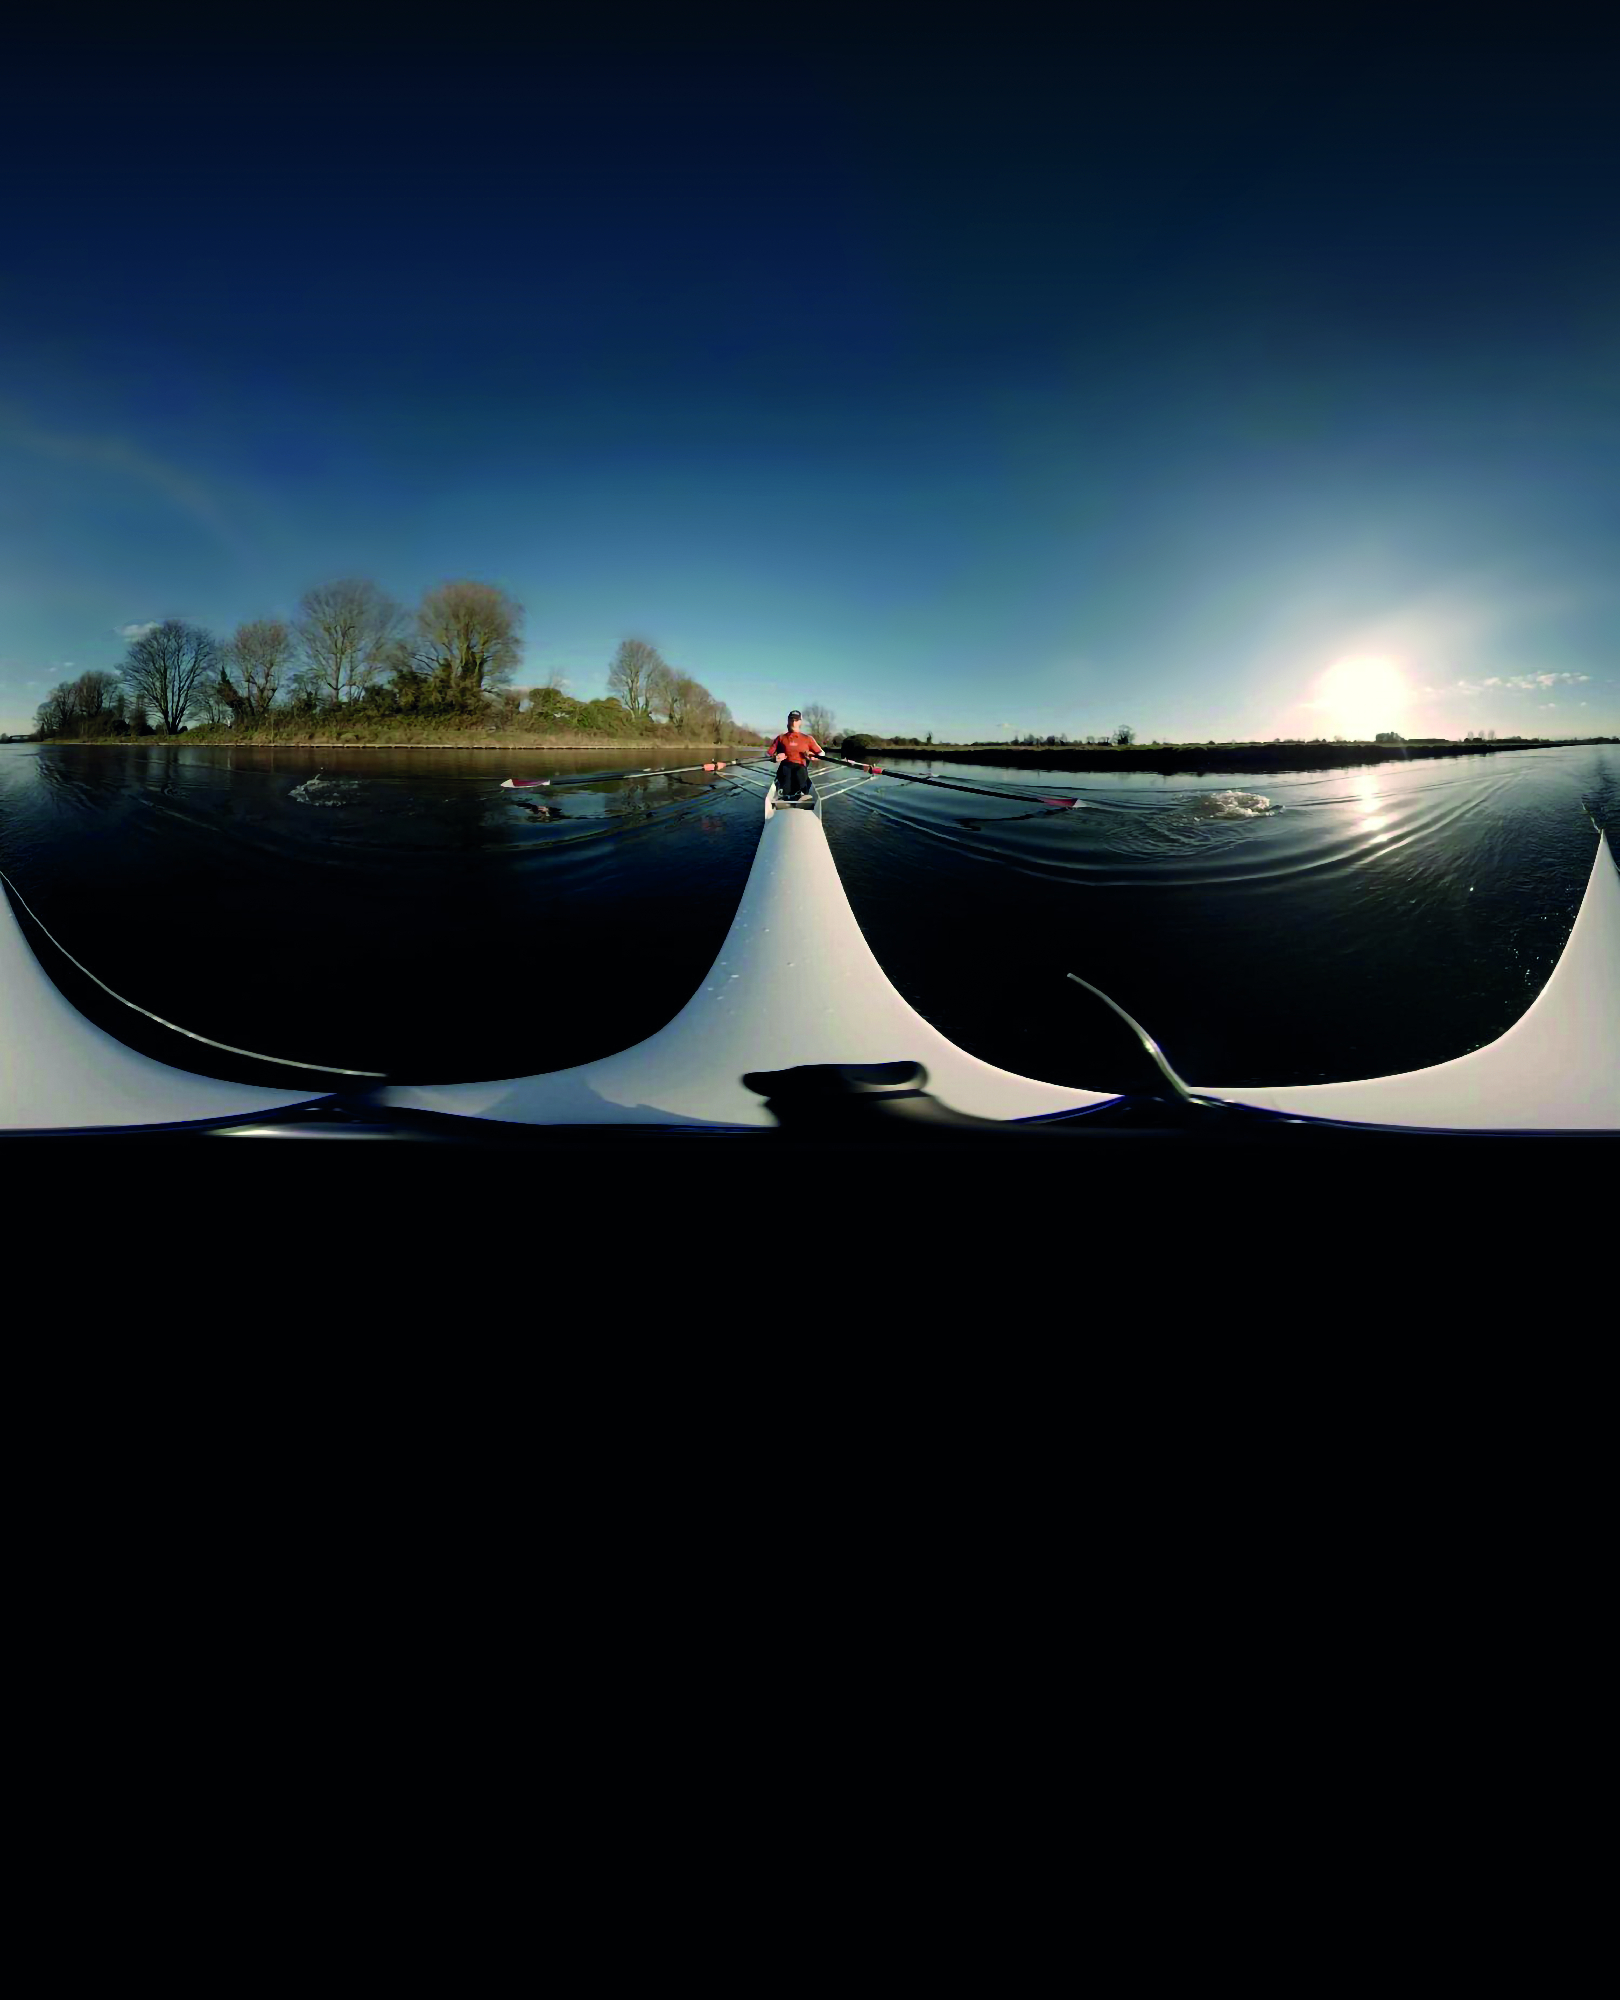 360 film still of woman in canoe